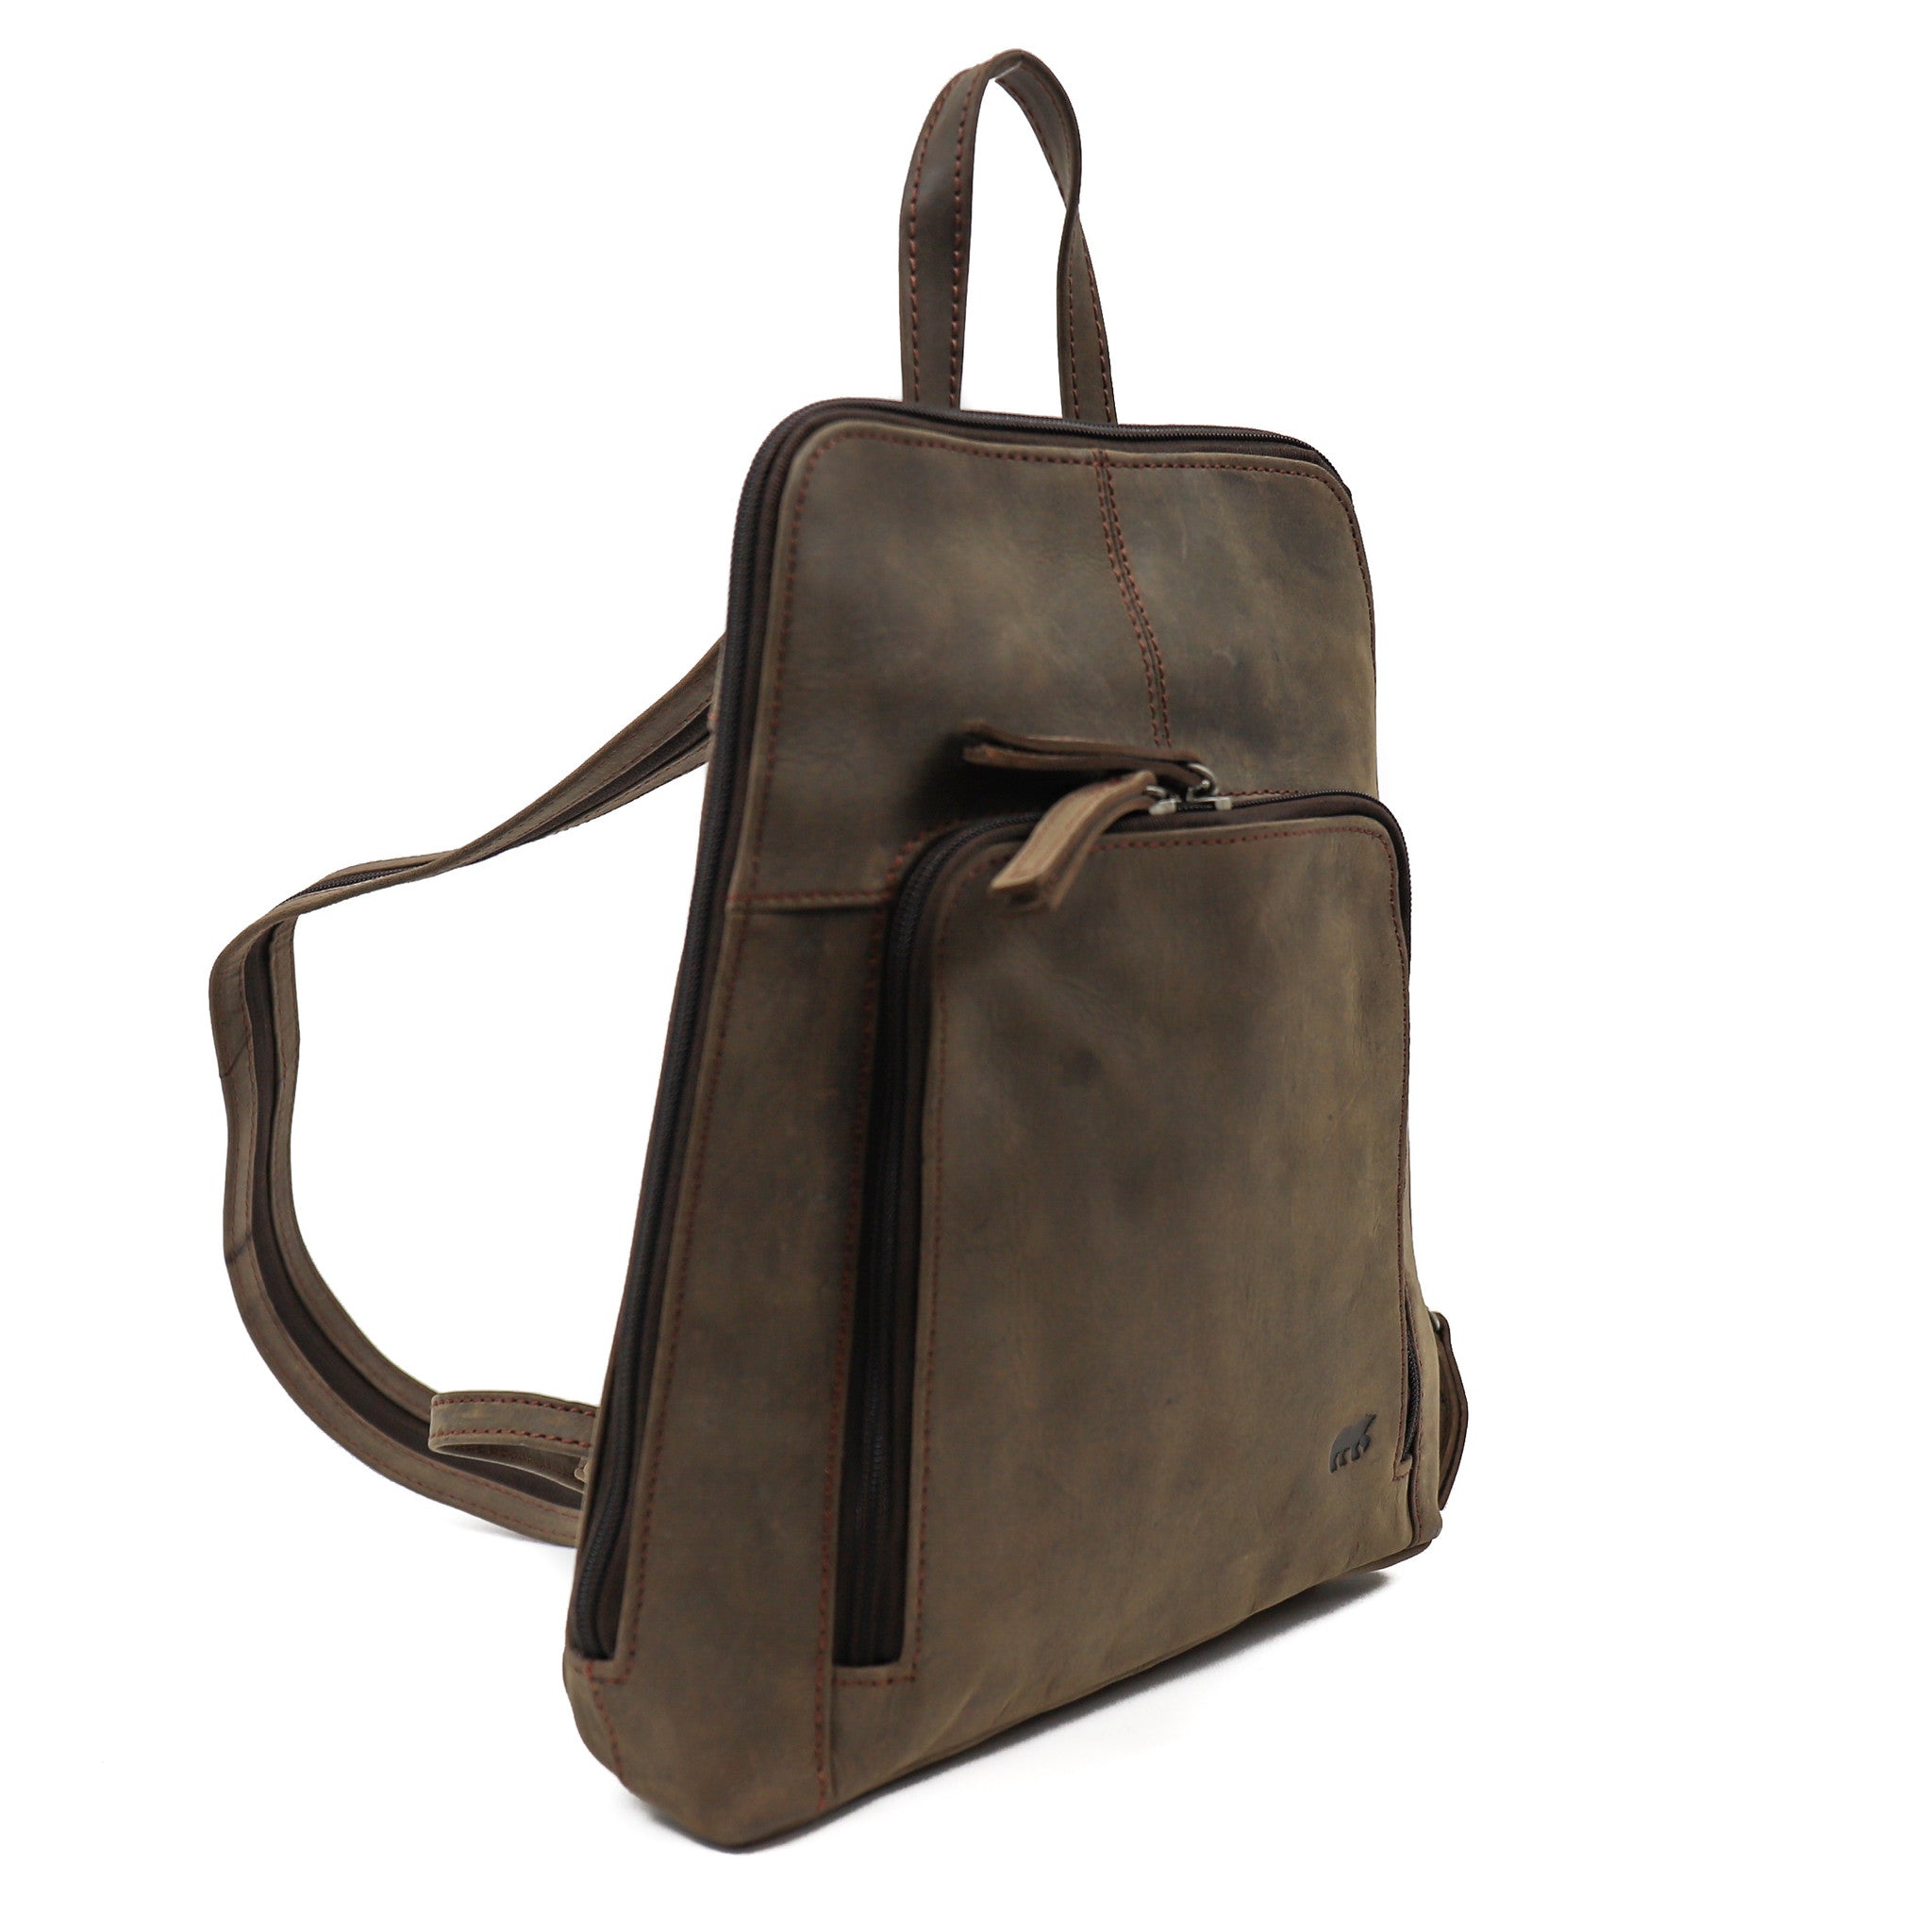 Backpack 'Barbel' brown - HD 6282